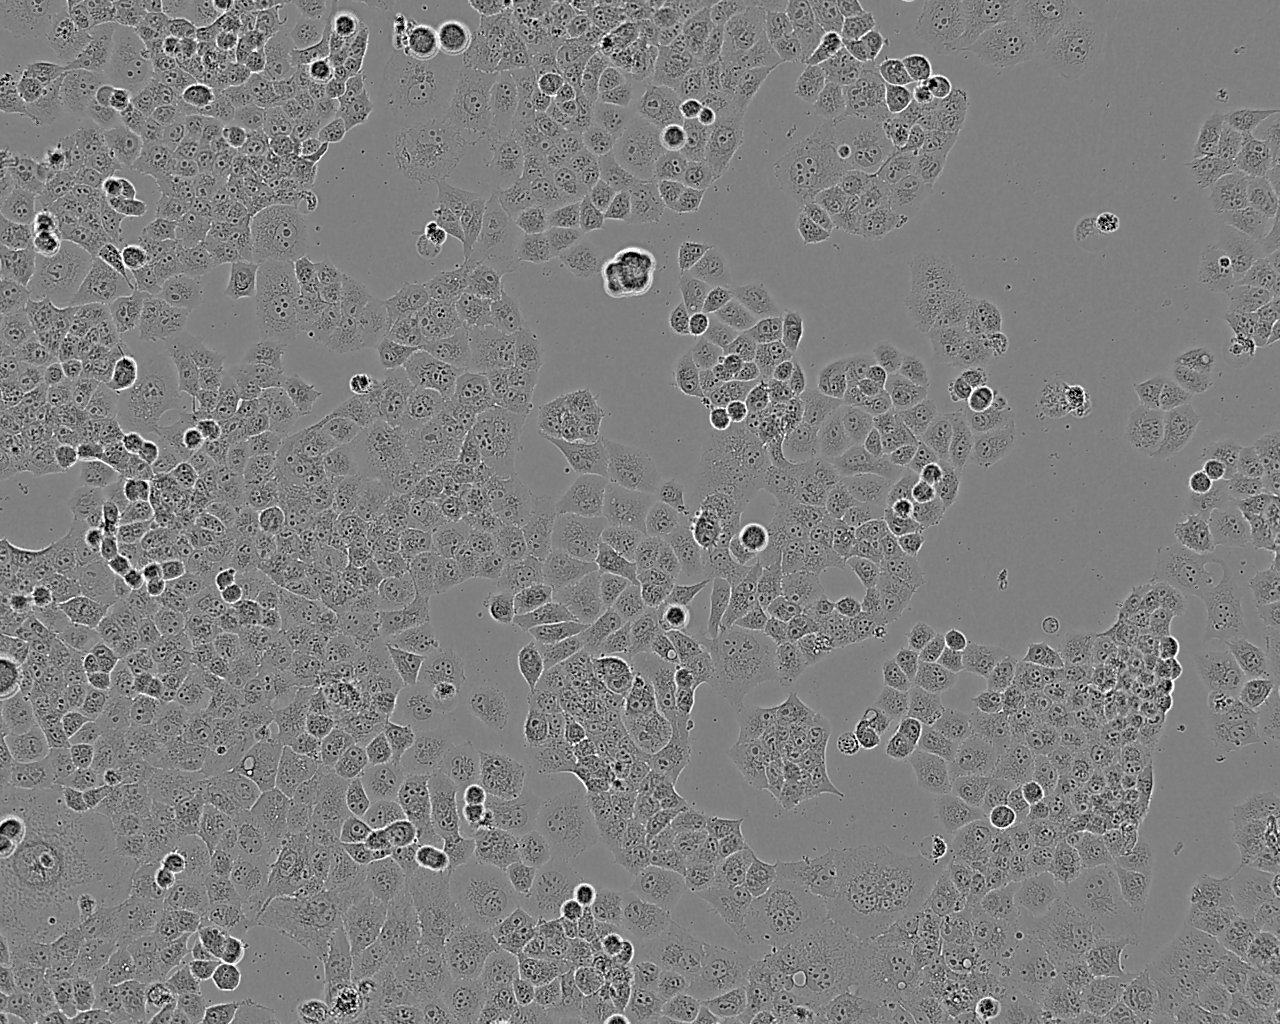 L-WRN Cell:小鼠皮下结缔组织细胞系